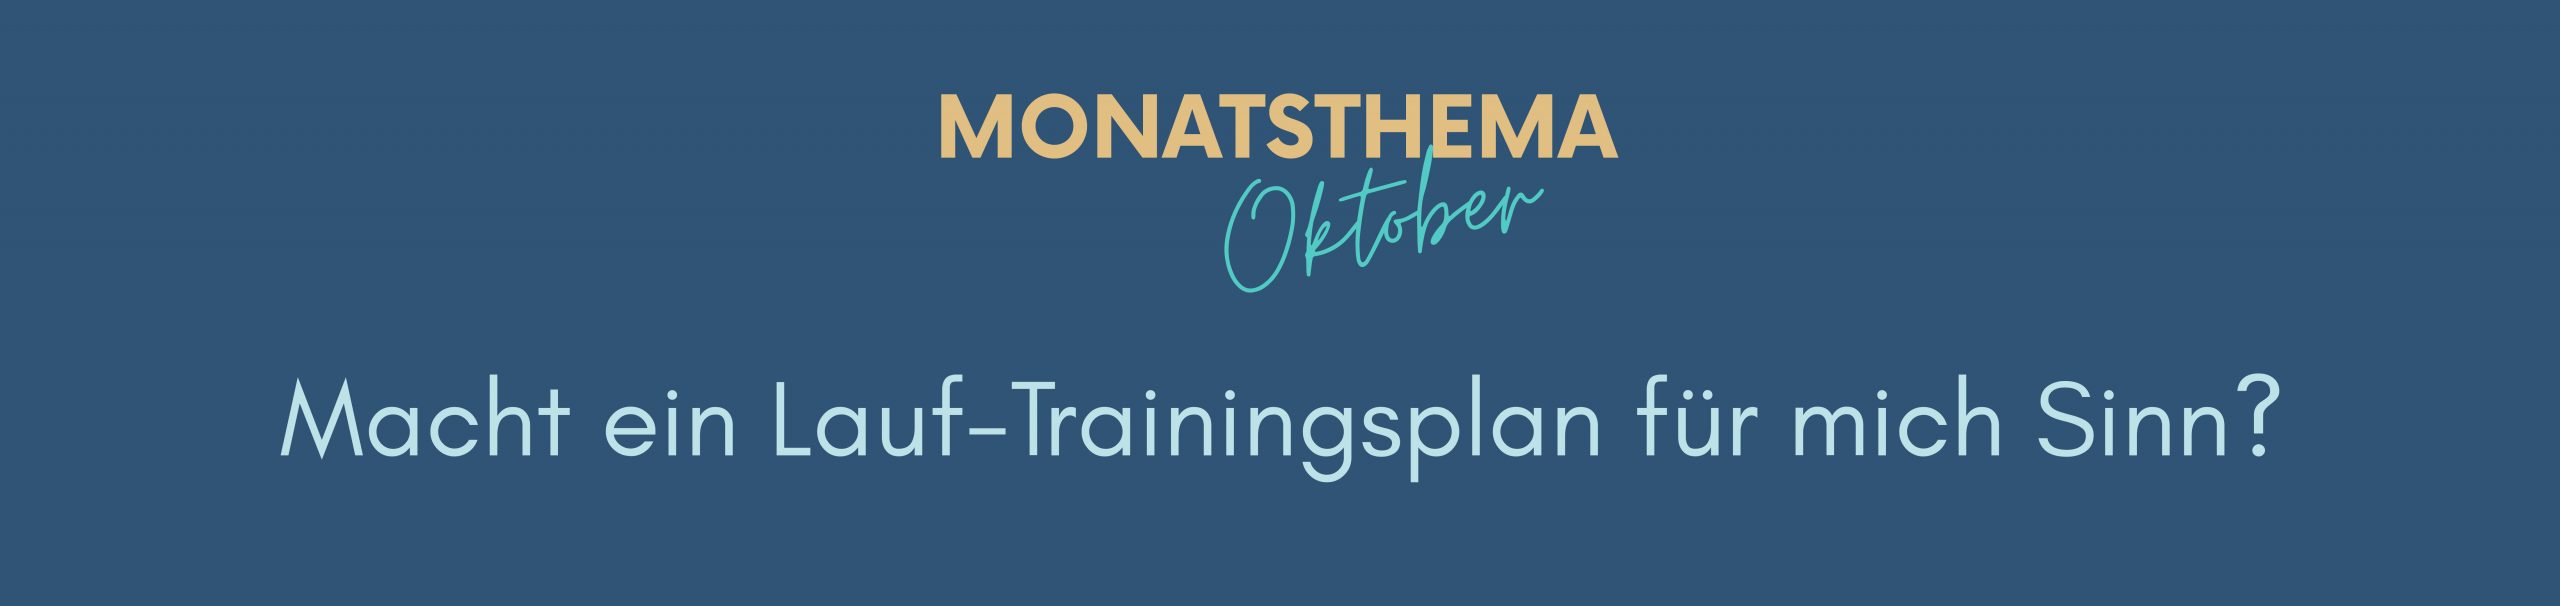 blauer Hintergrund mit Text: Monatsthema Oktober, Macht ein Lauf-Trainingsplan für mich Sinn?